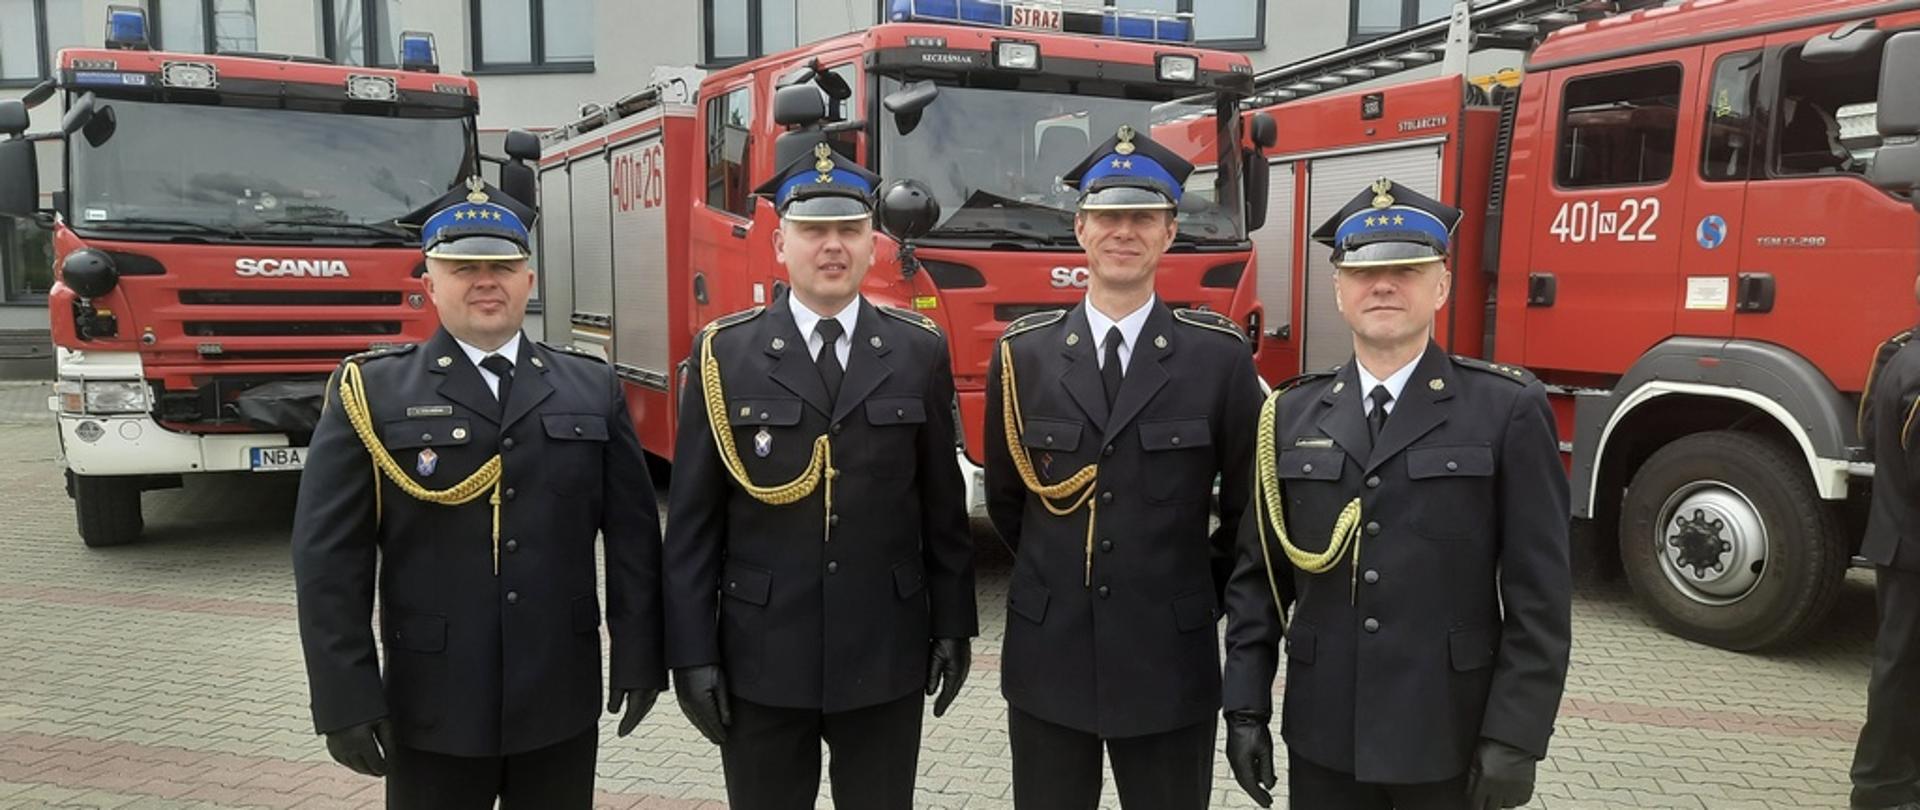 na zdjęciu czterech strażaków w mundurach galowych, w tle, trzy czarowne samochody pożarnicze